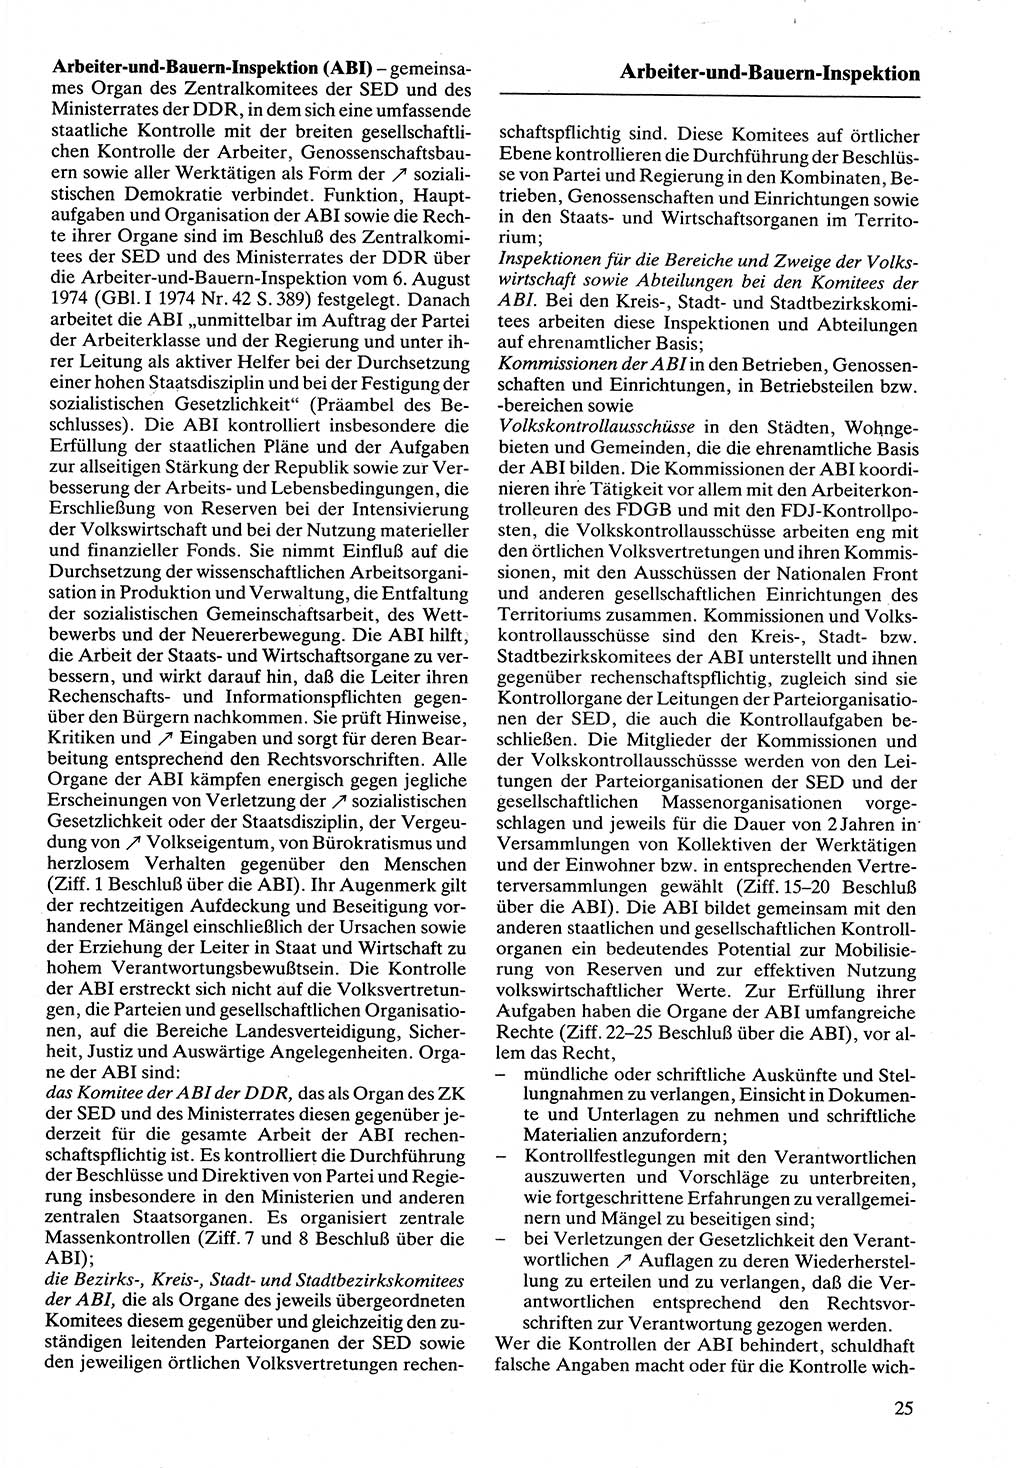 Rechtslexikon [Deutsche Demokratische Republik (DDR)] 1988, Seite 25 (Rechtslex. DDR 1988, S. 25)